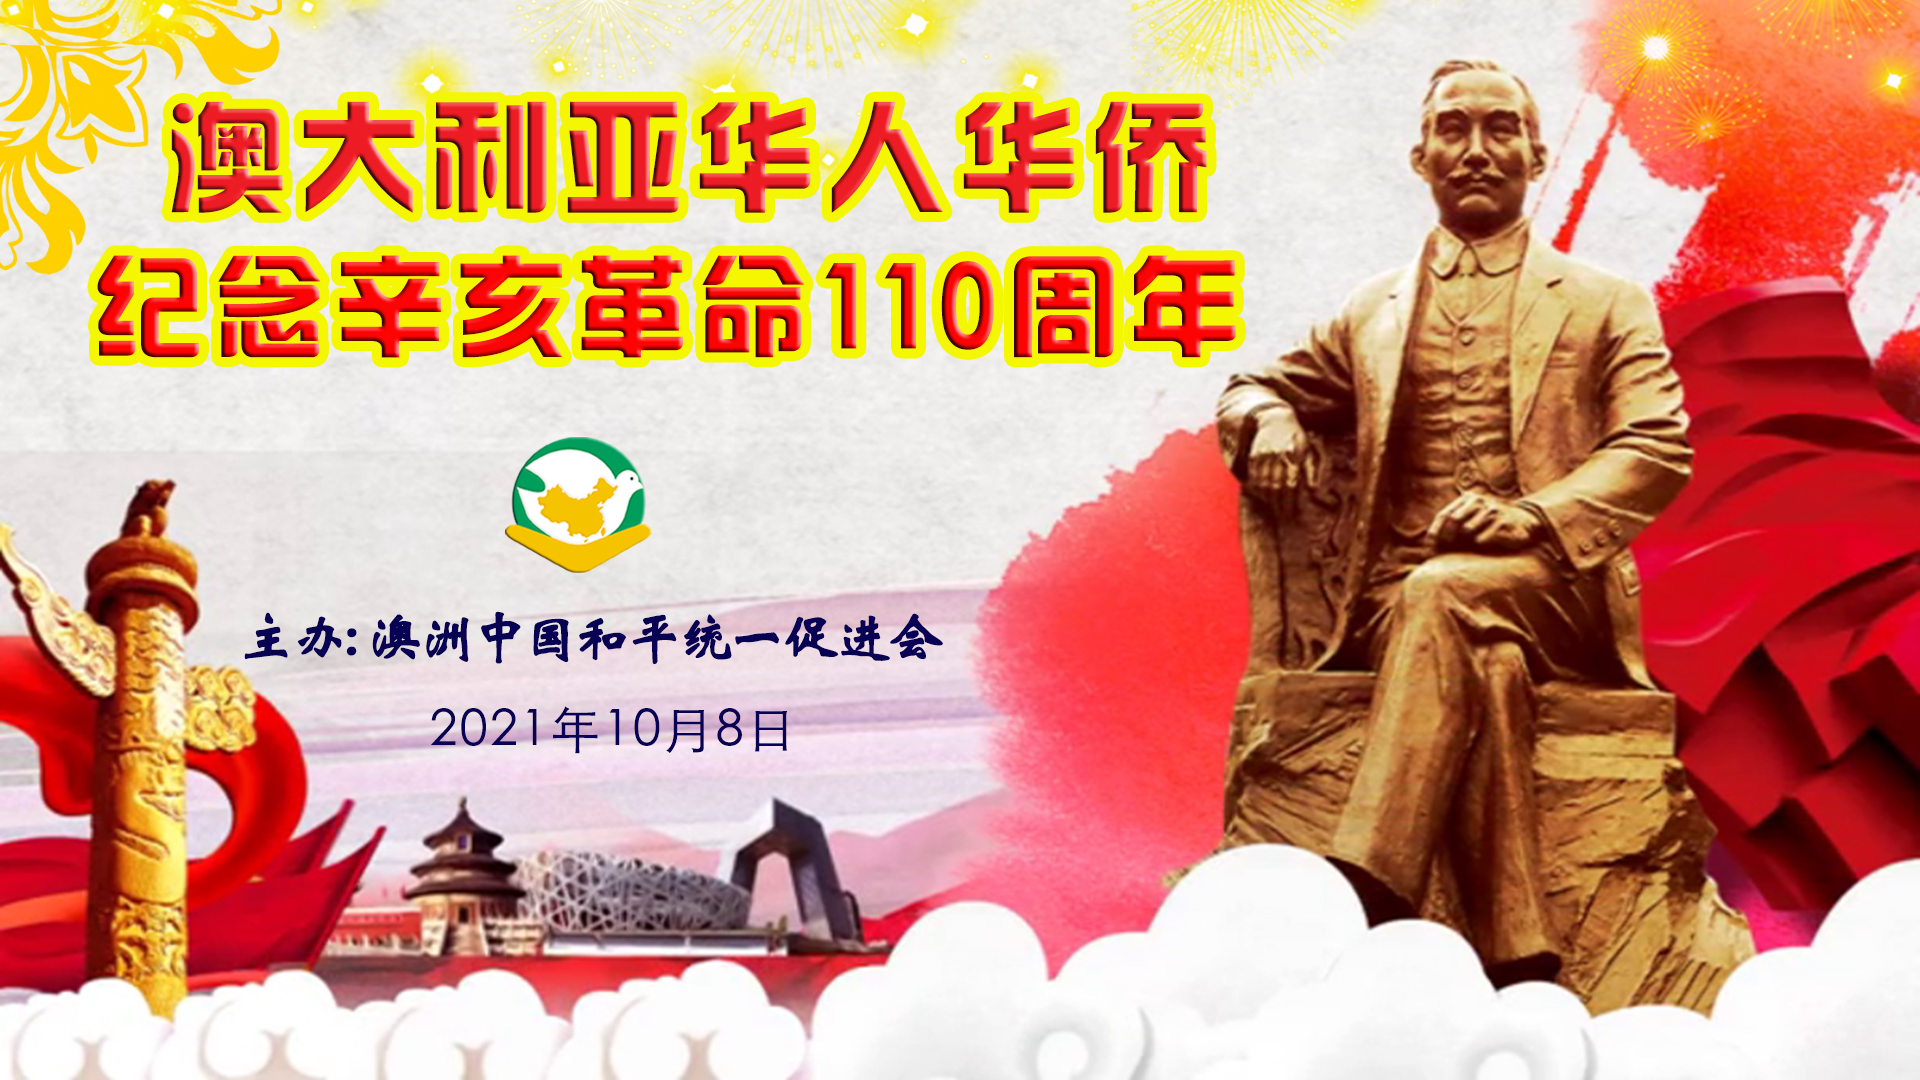 杨志唯在澳大利亚华人华侨纪念辛亥革命110周年座谈会上的发言